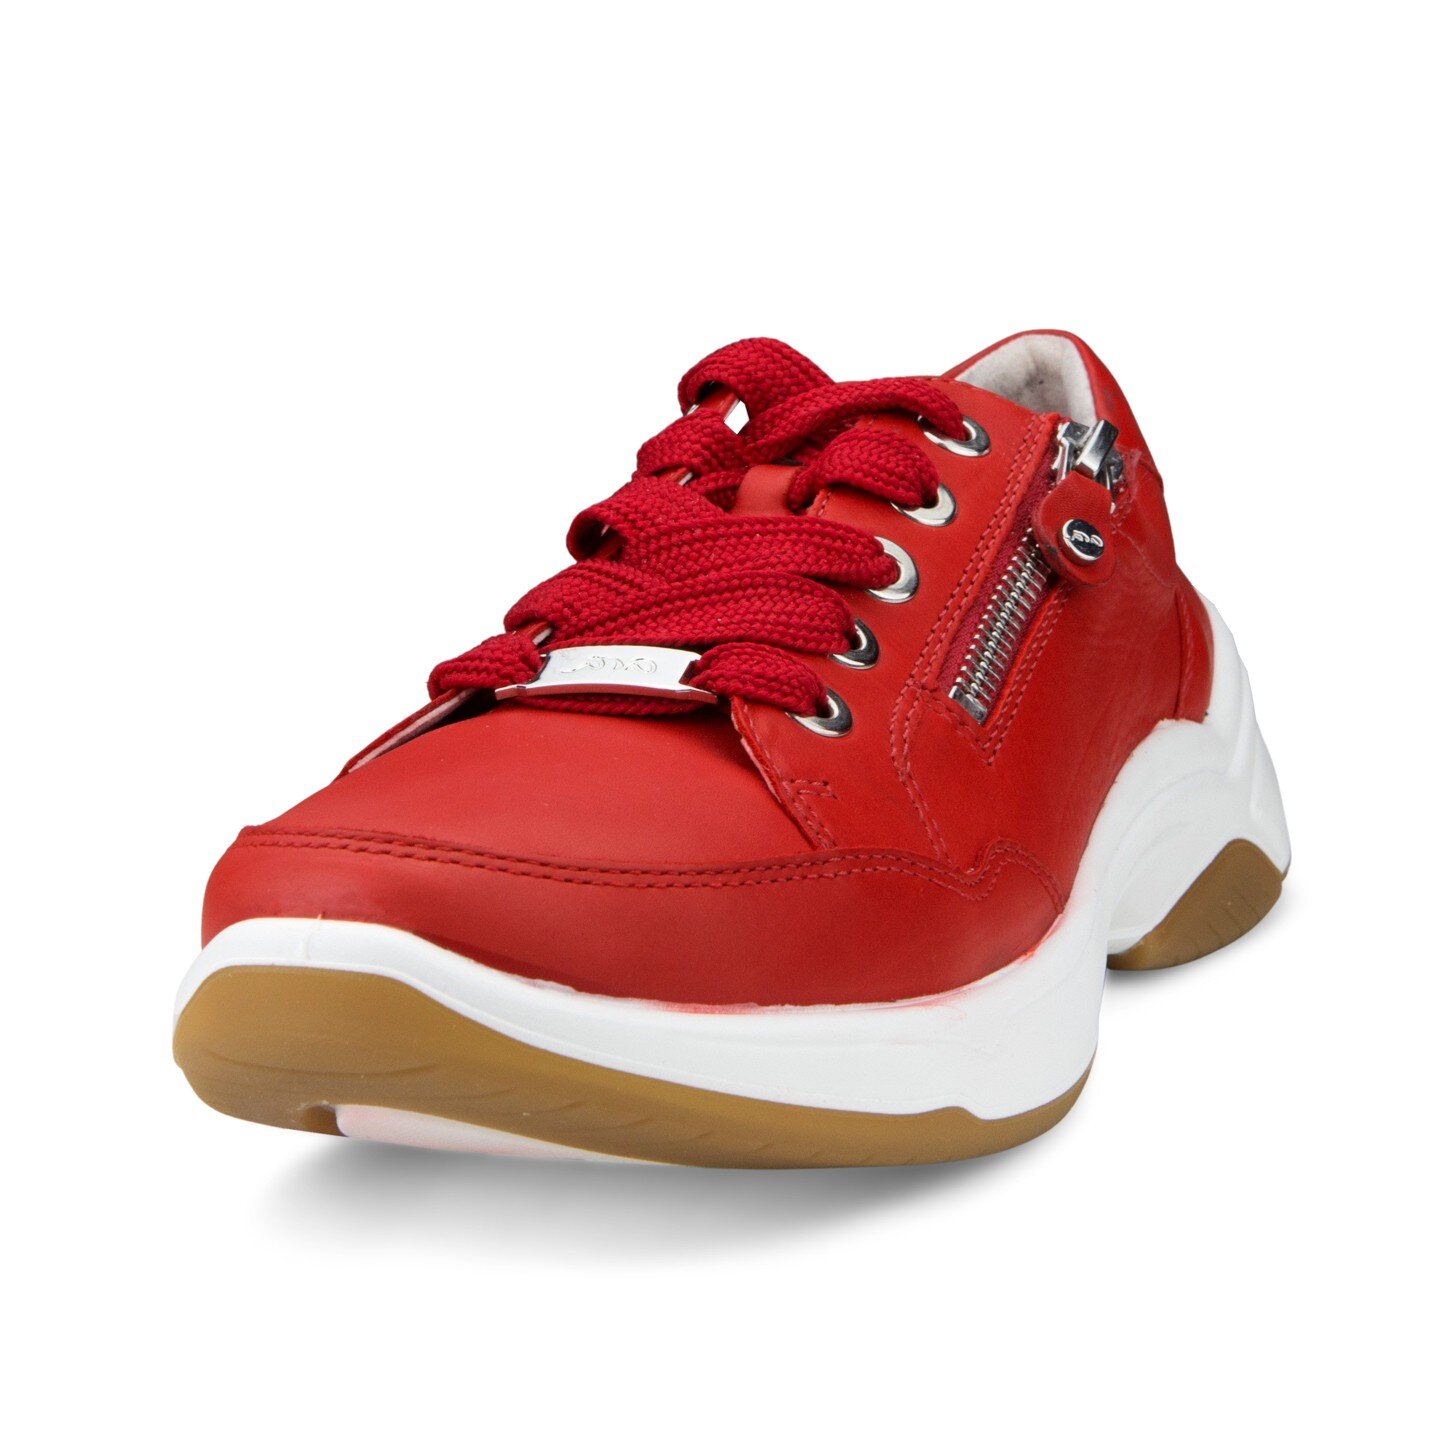 Sportiniai batai moterims Ara 2420808/42, raudoni kaina | pigu.lt